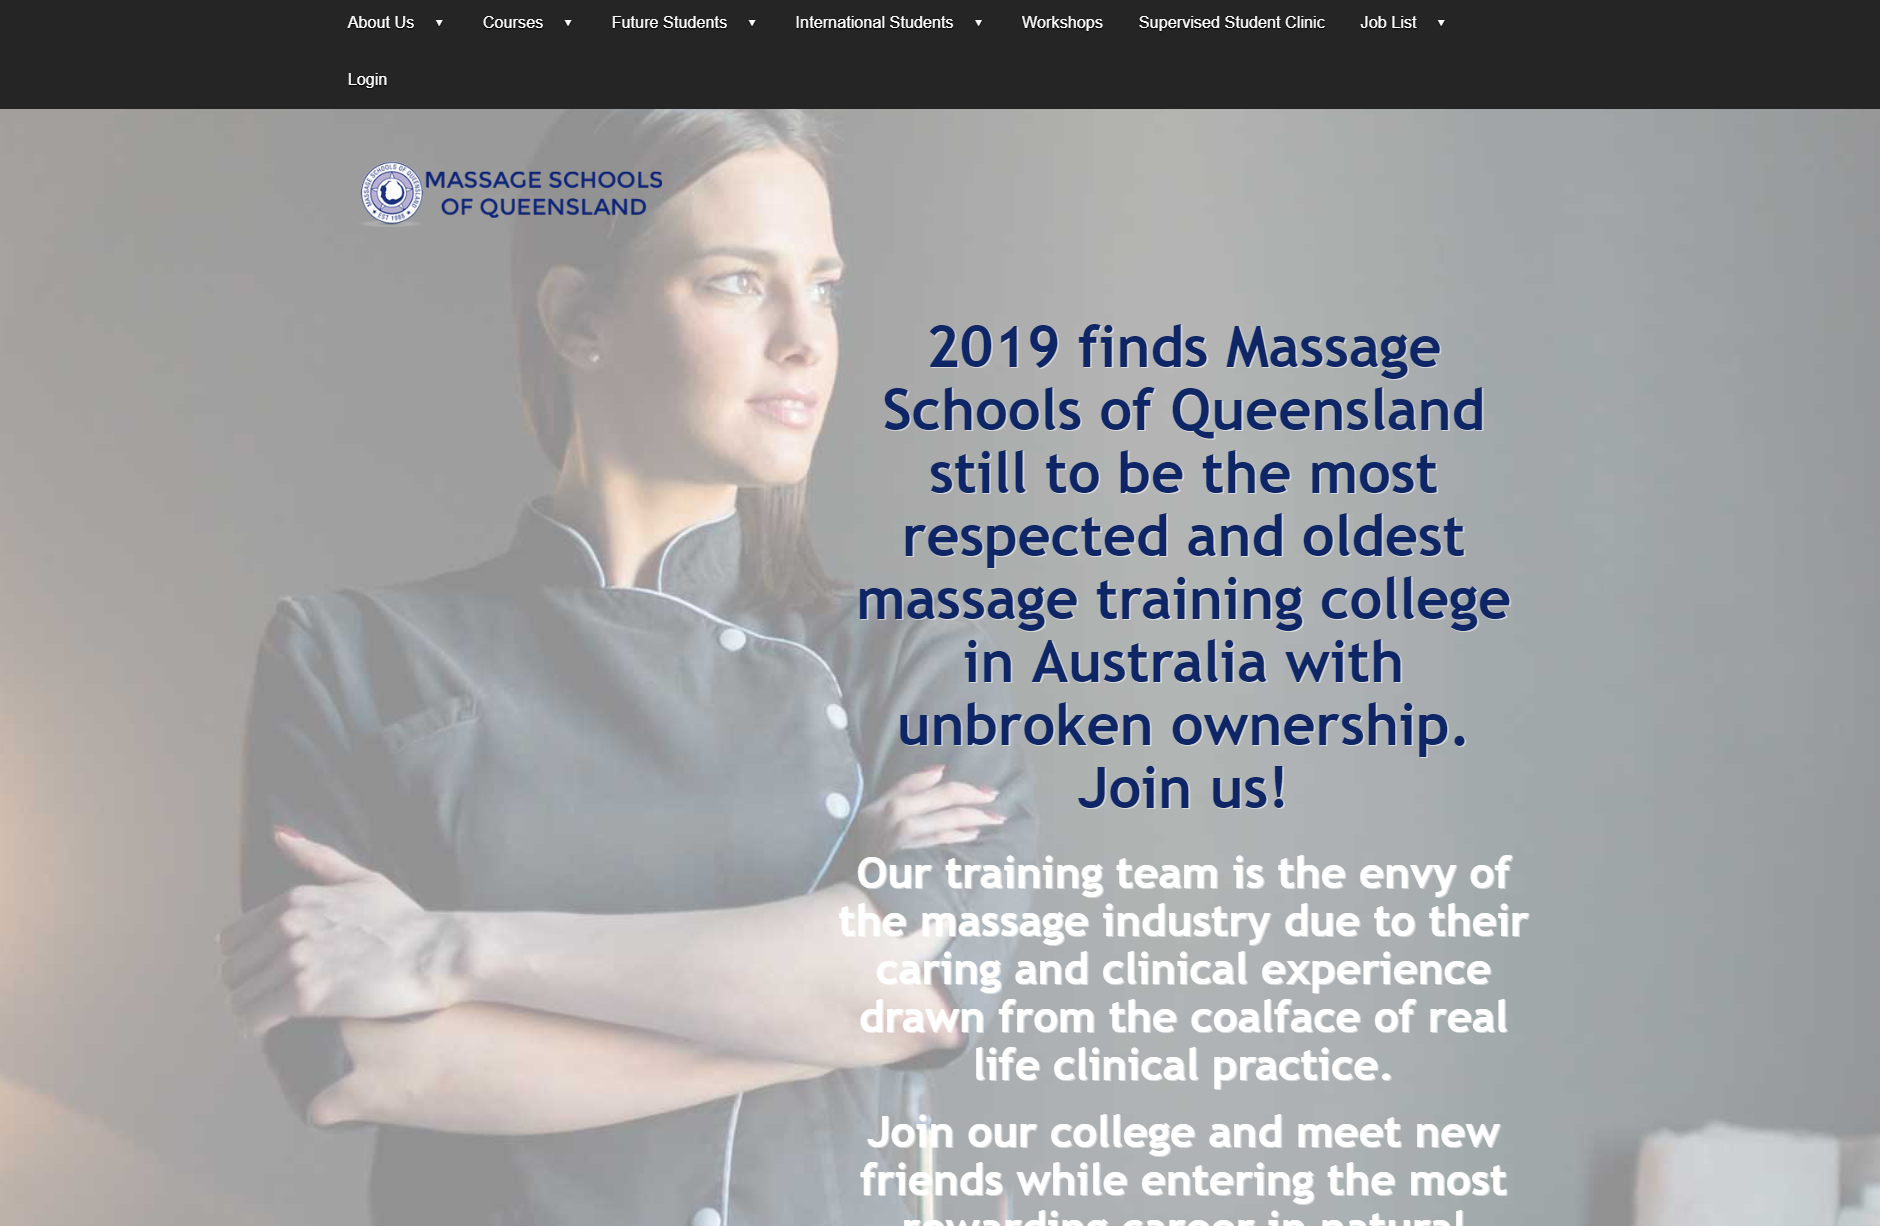 Massage Schools of Queensland（MSQ）